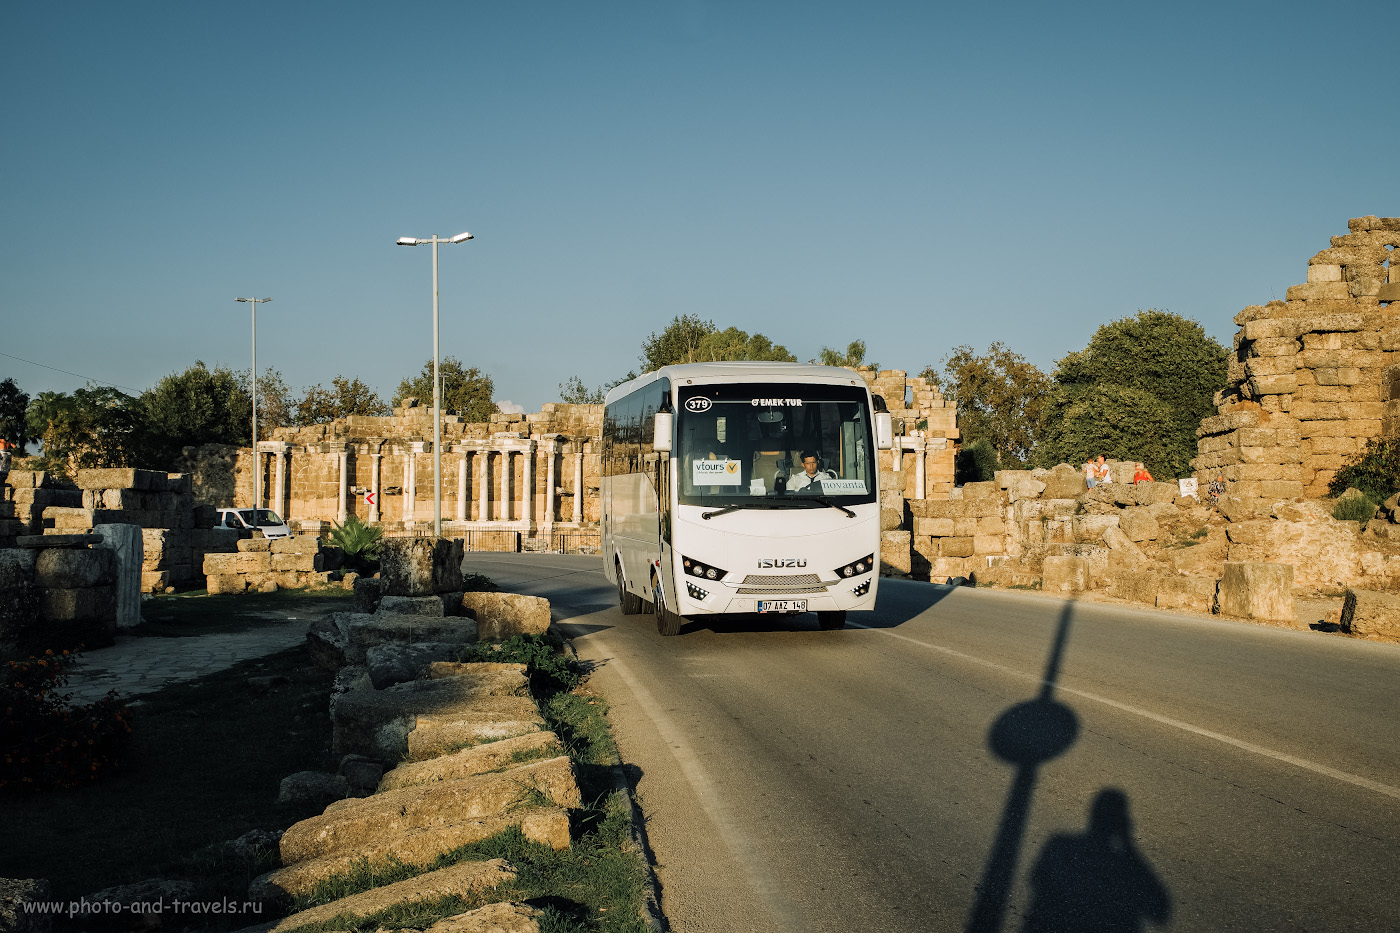 Фото 6. Автобус едет по улице Liman Caddesi в Сиде. На заднем плане – нимфей и остатки городской стены. 1/340, 7.1, 200, +0.33, 25.